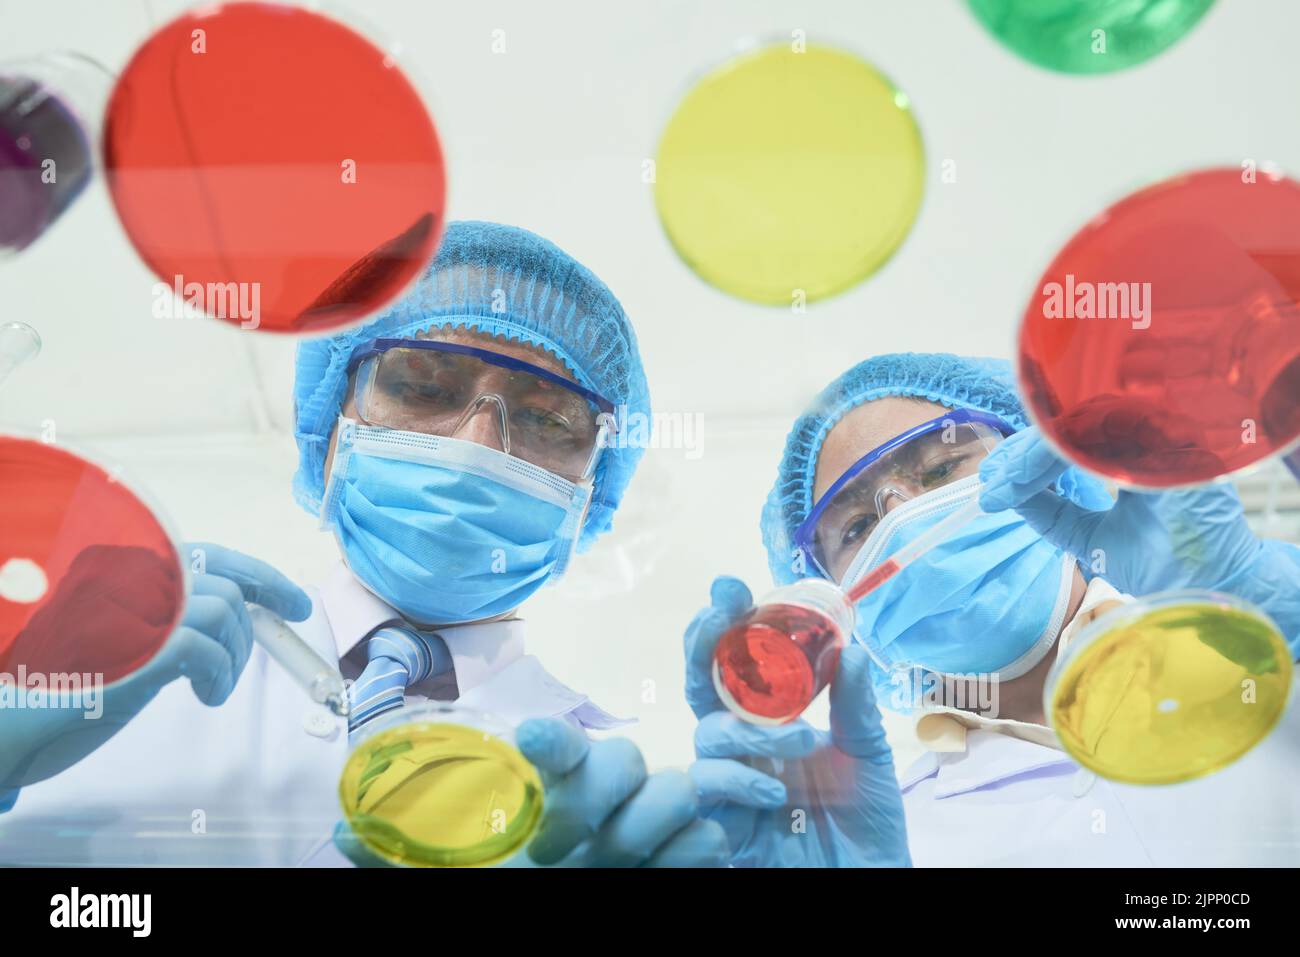 Vista a basso angolo di scienziati asiatici concentrati che indossano camici bianchi e guanti di gomma utilizzando pipette e vetreria da laboratorio durante l'esecuzione di esperimenti, vista attraverso la superficie del tavolo di vetro Foto Stock